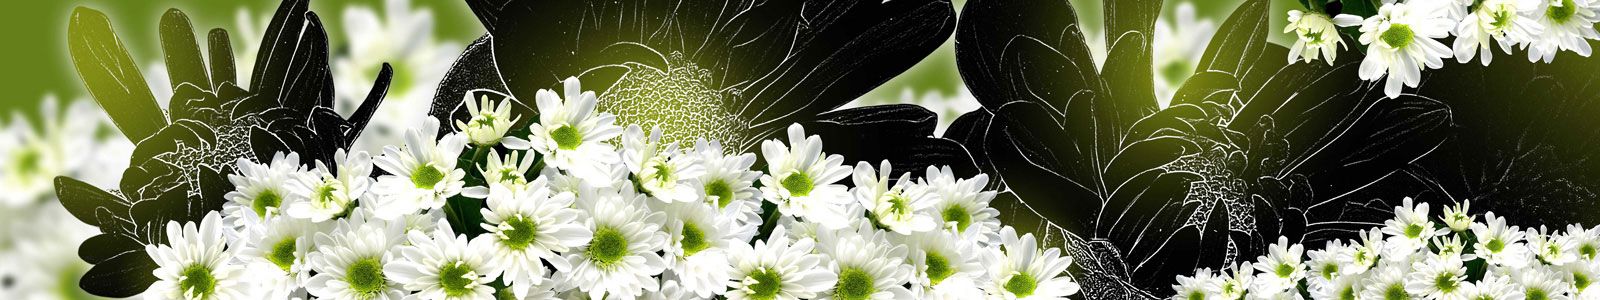 №6215 - Цветы белой хризантемы